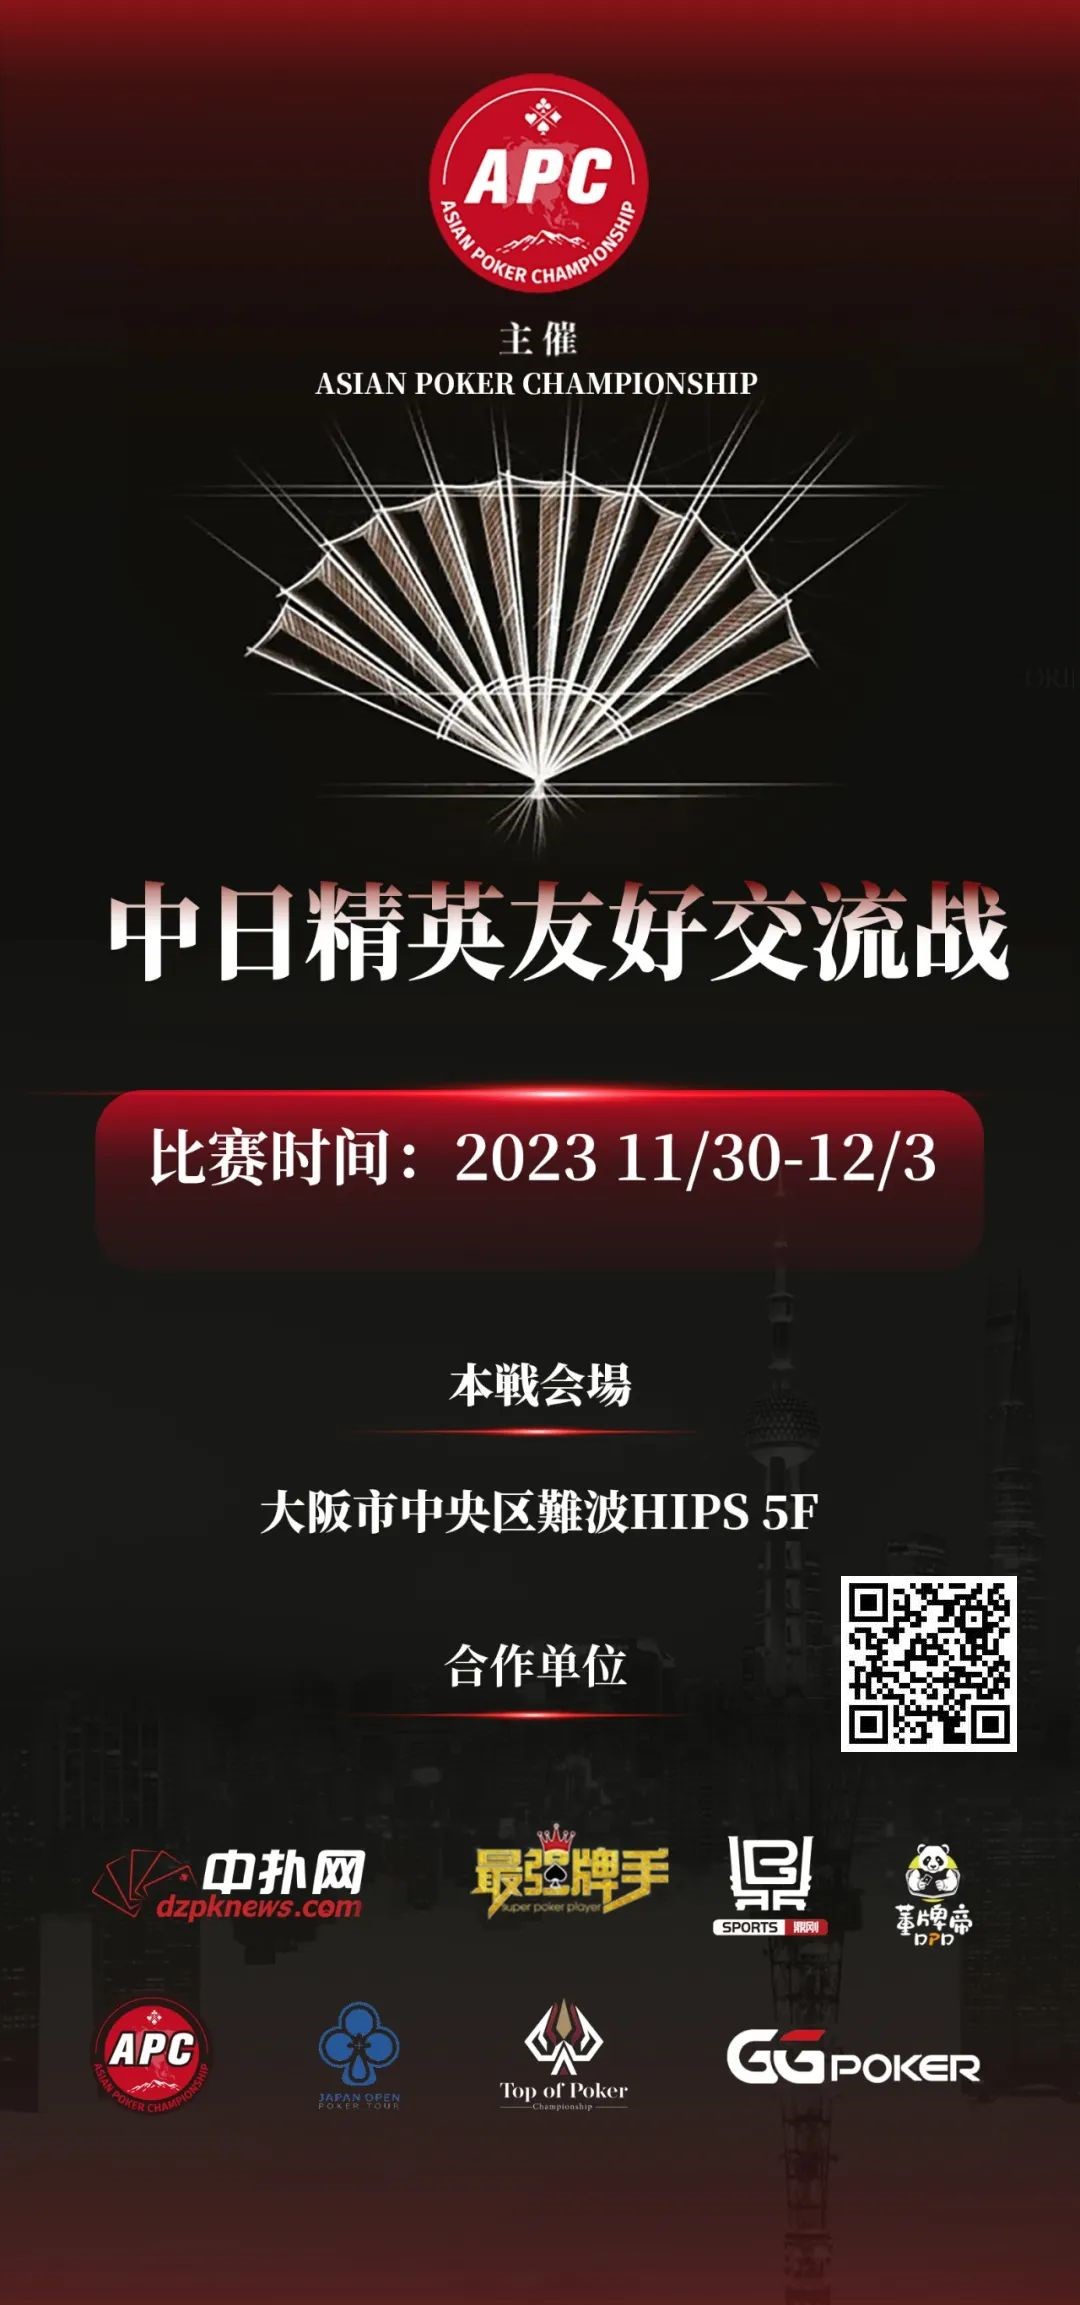 【EPCP扑克】赛事公告丨APC中日交流赛将于11月30至12月3日在大阪举办！